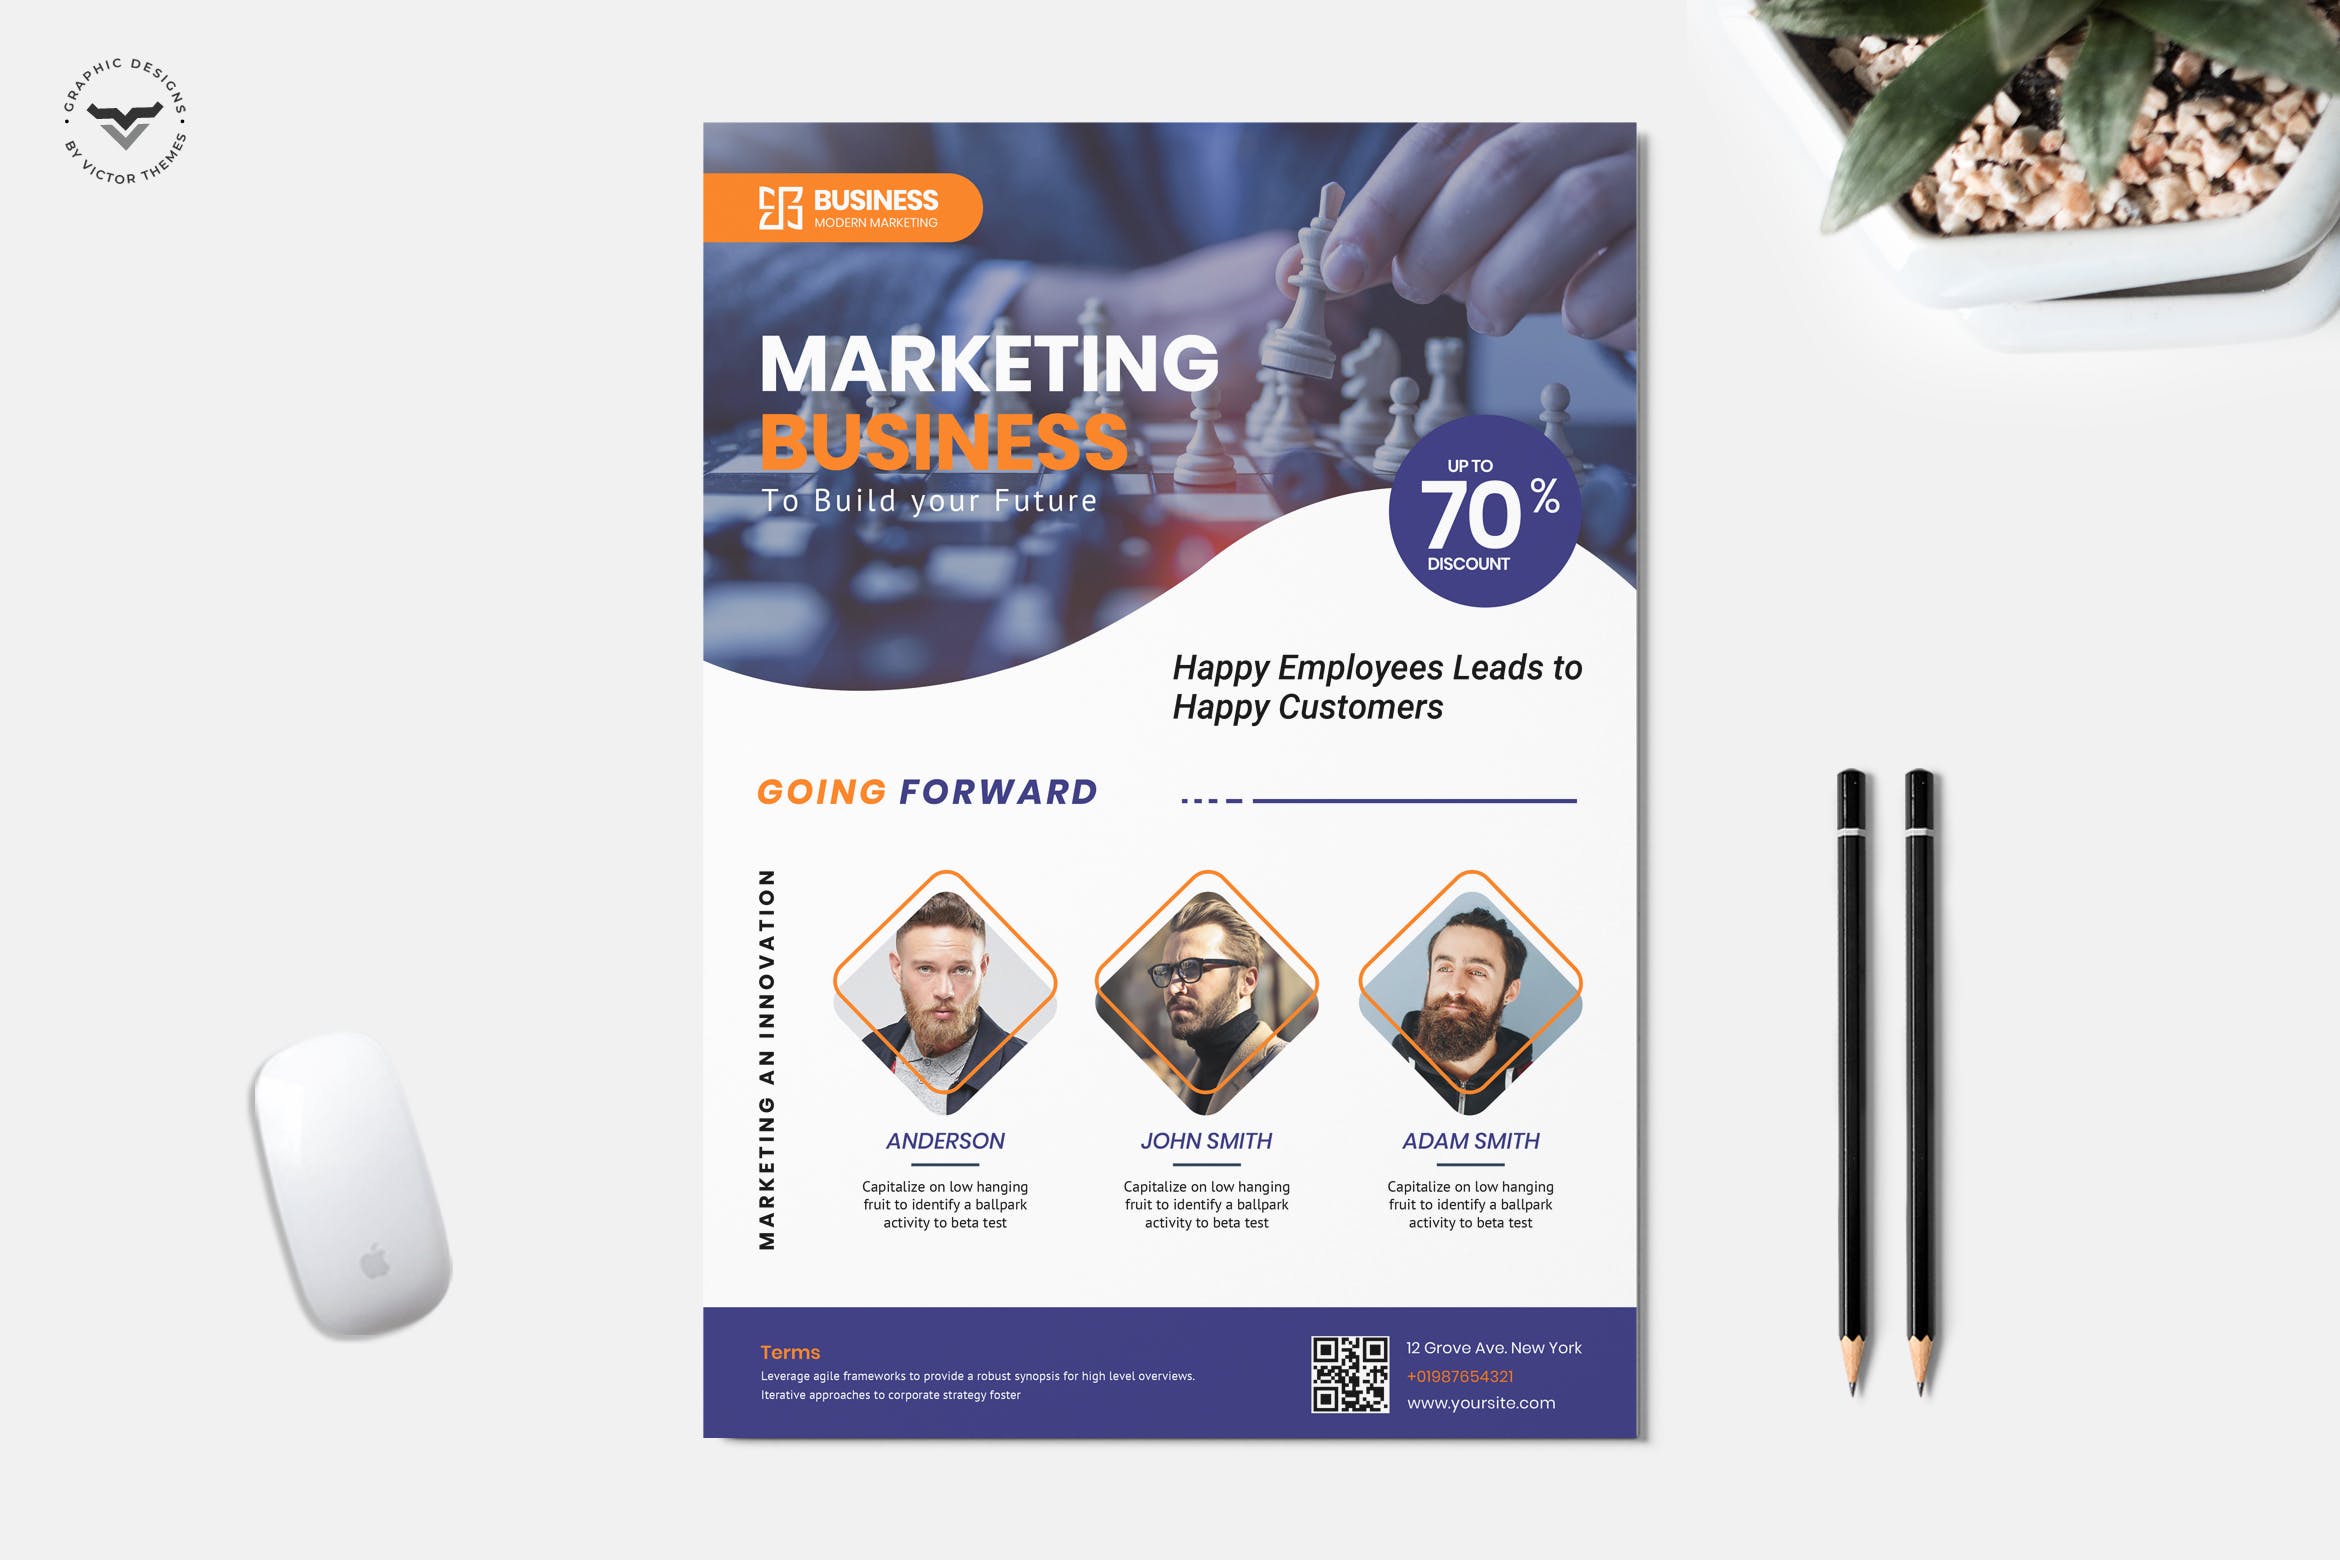 市场营销专家咨询服务公司宣传单设计模板 Business Flyer Template插图